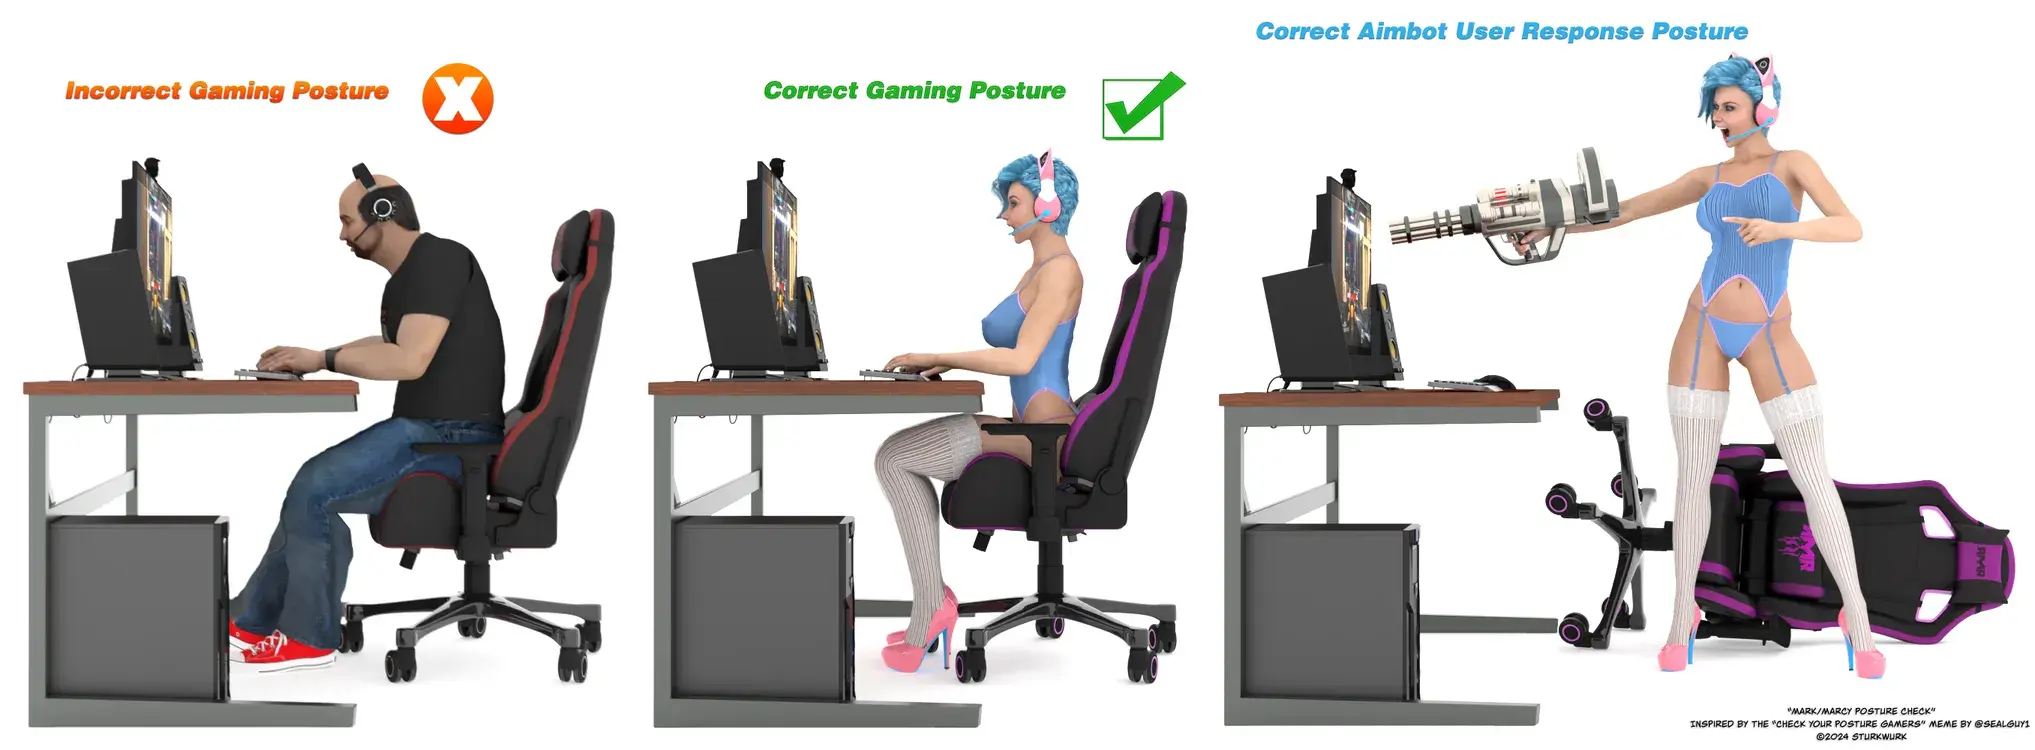 Proper Gaming Posture